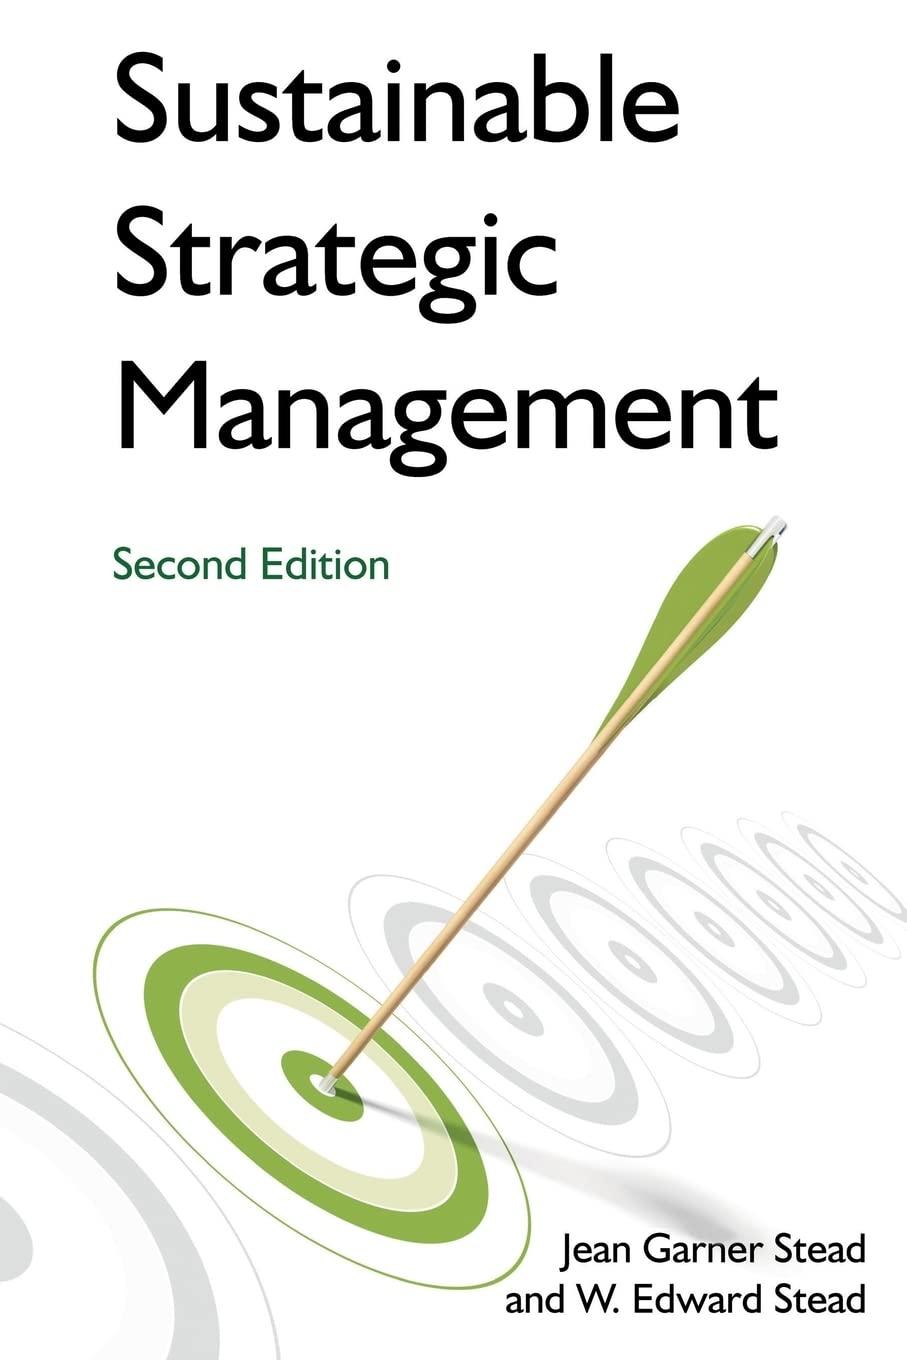 sustainable strategic management 2nd edition jean garner stead, w. edward stead 0765635453, 978-0765635457